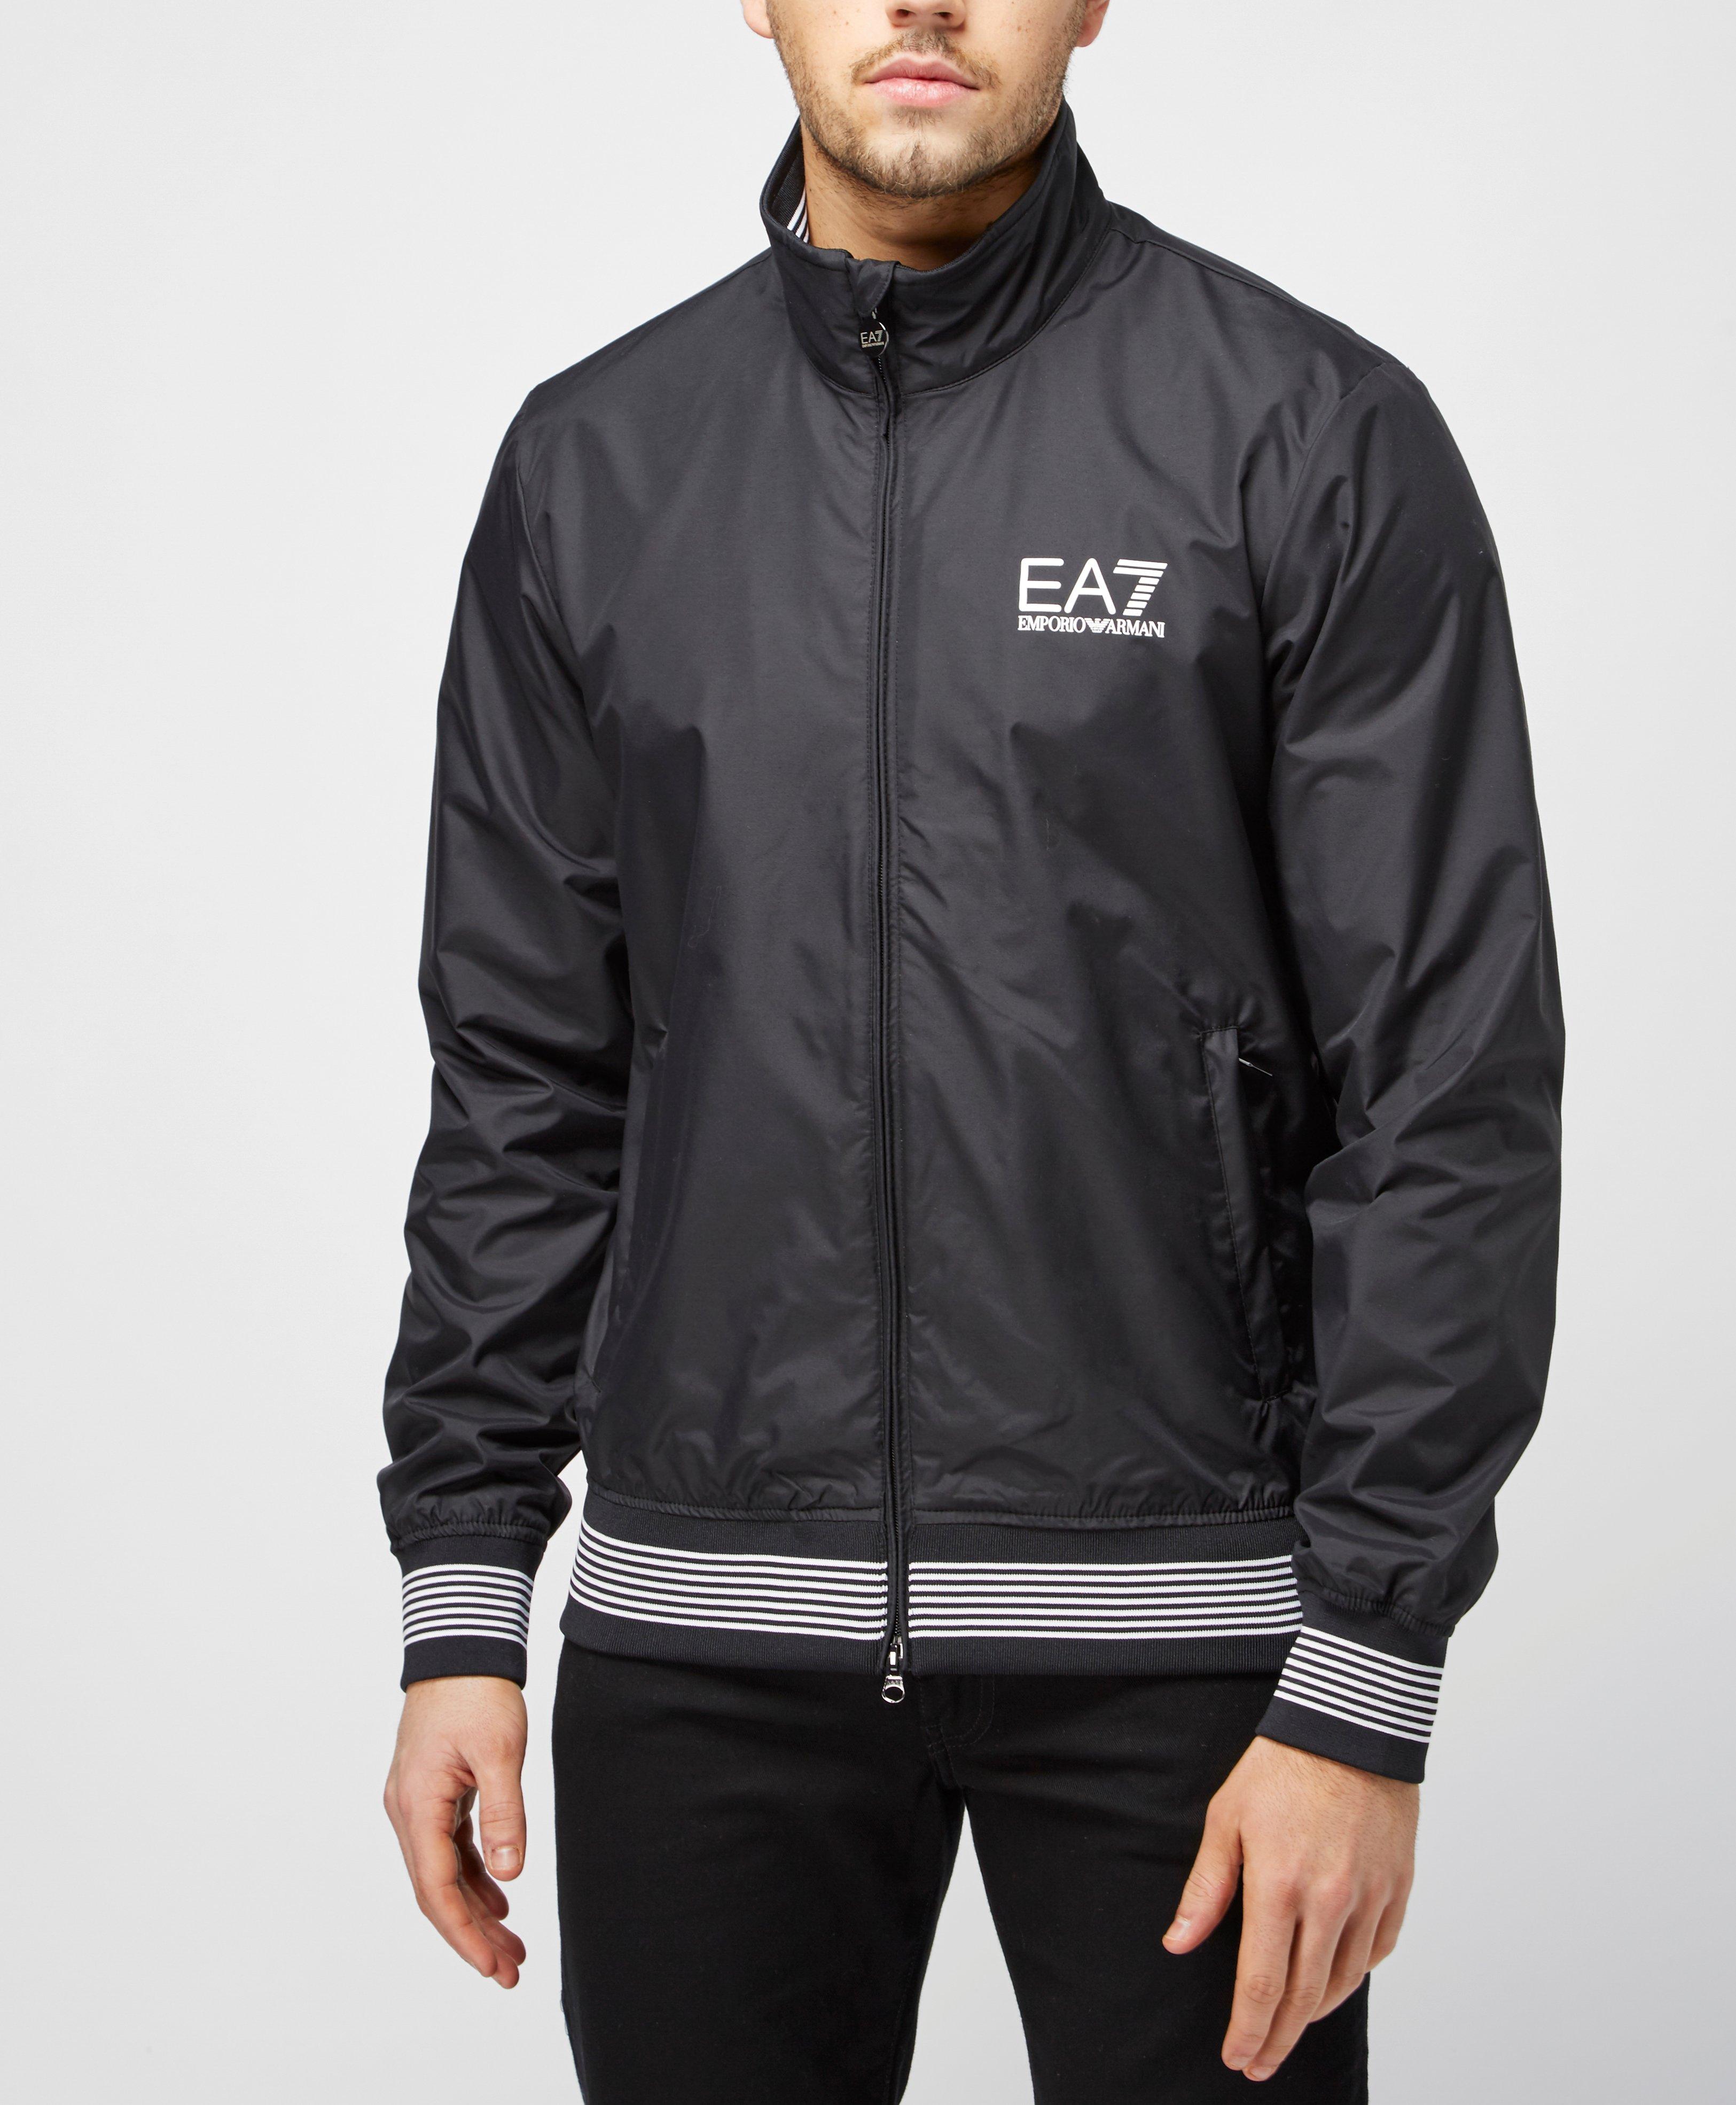 ea7 sailing jacket